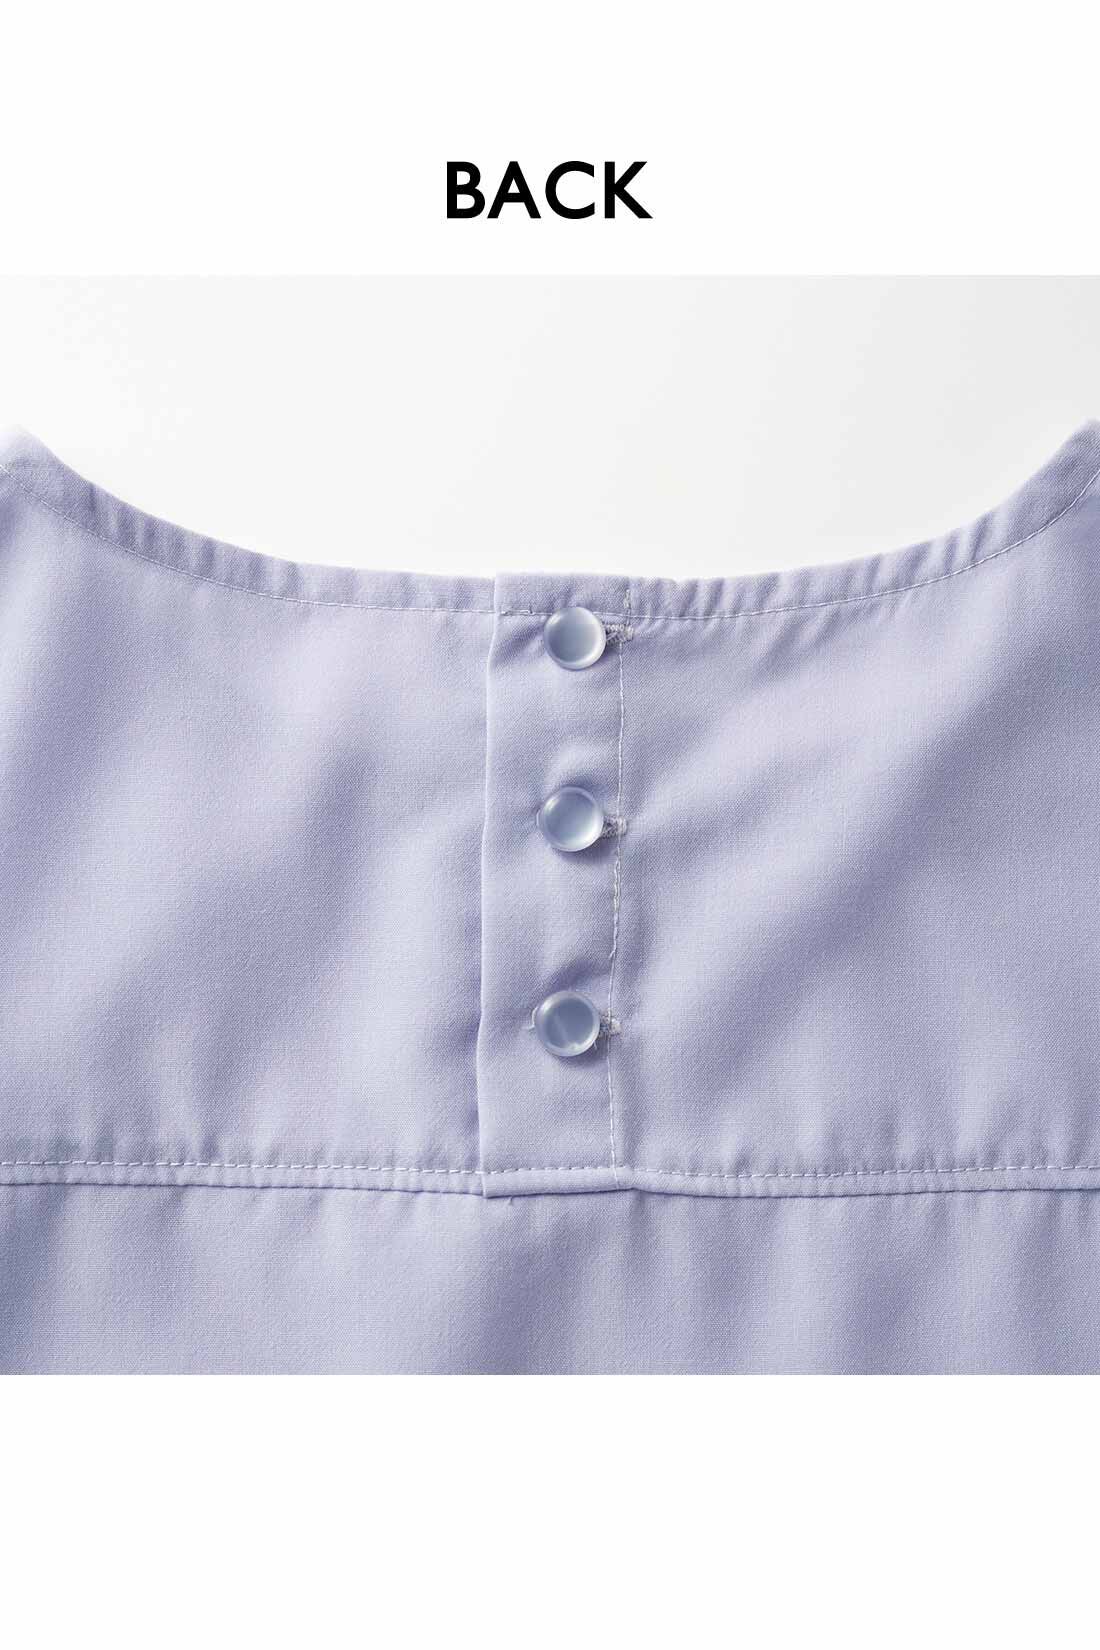 IEDIT|IEDIT[イディット]　ヴィンテージ風スパンローン素材のしわが気になりにくいシャツライクトップス〈パープル〉|背中のボタンは、デザインポイントにも。ヨークでシャツのきちんと感もプラス。